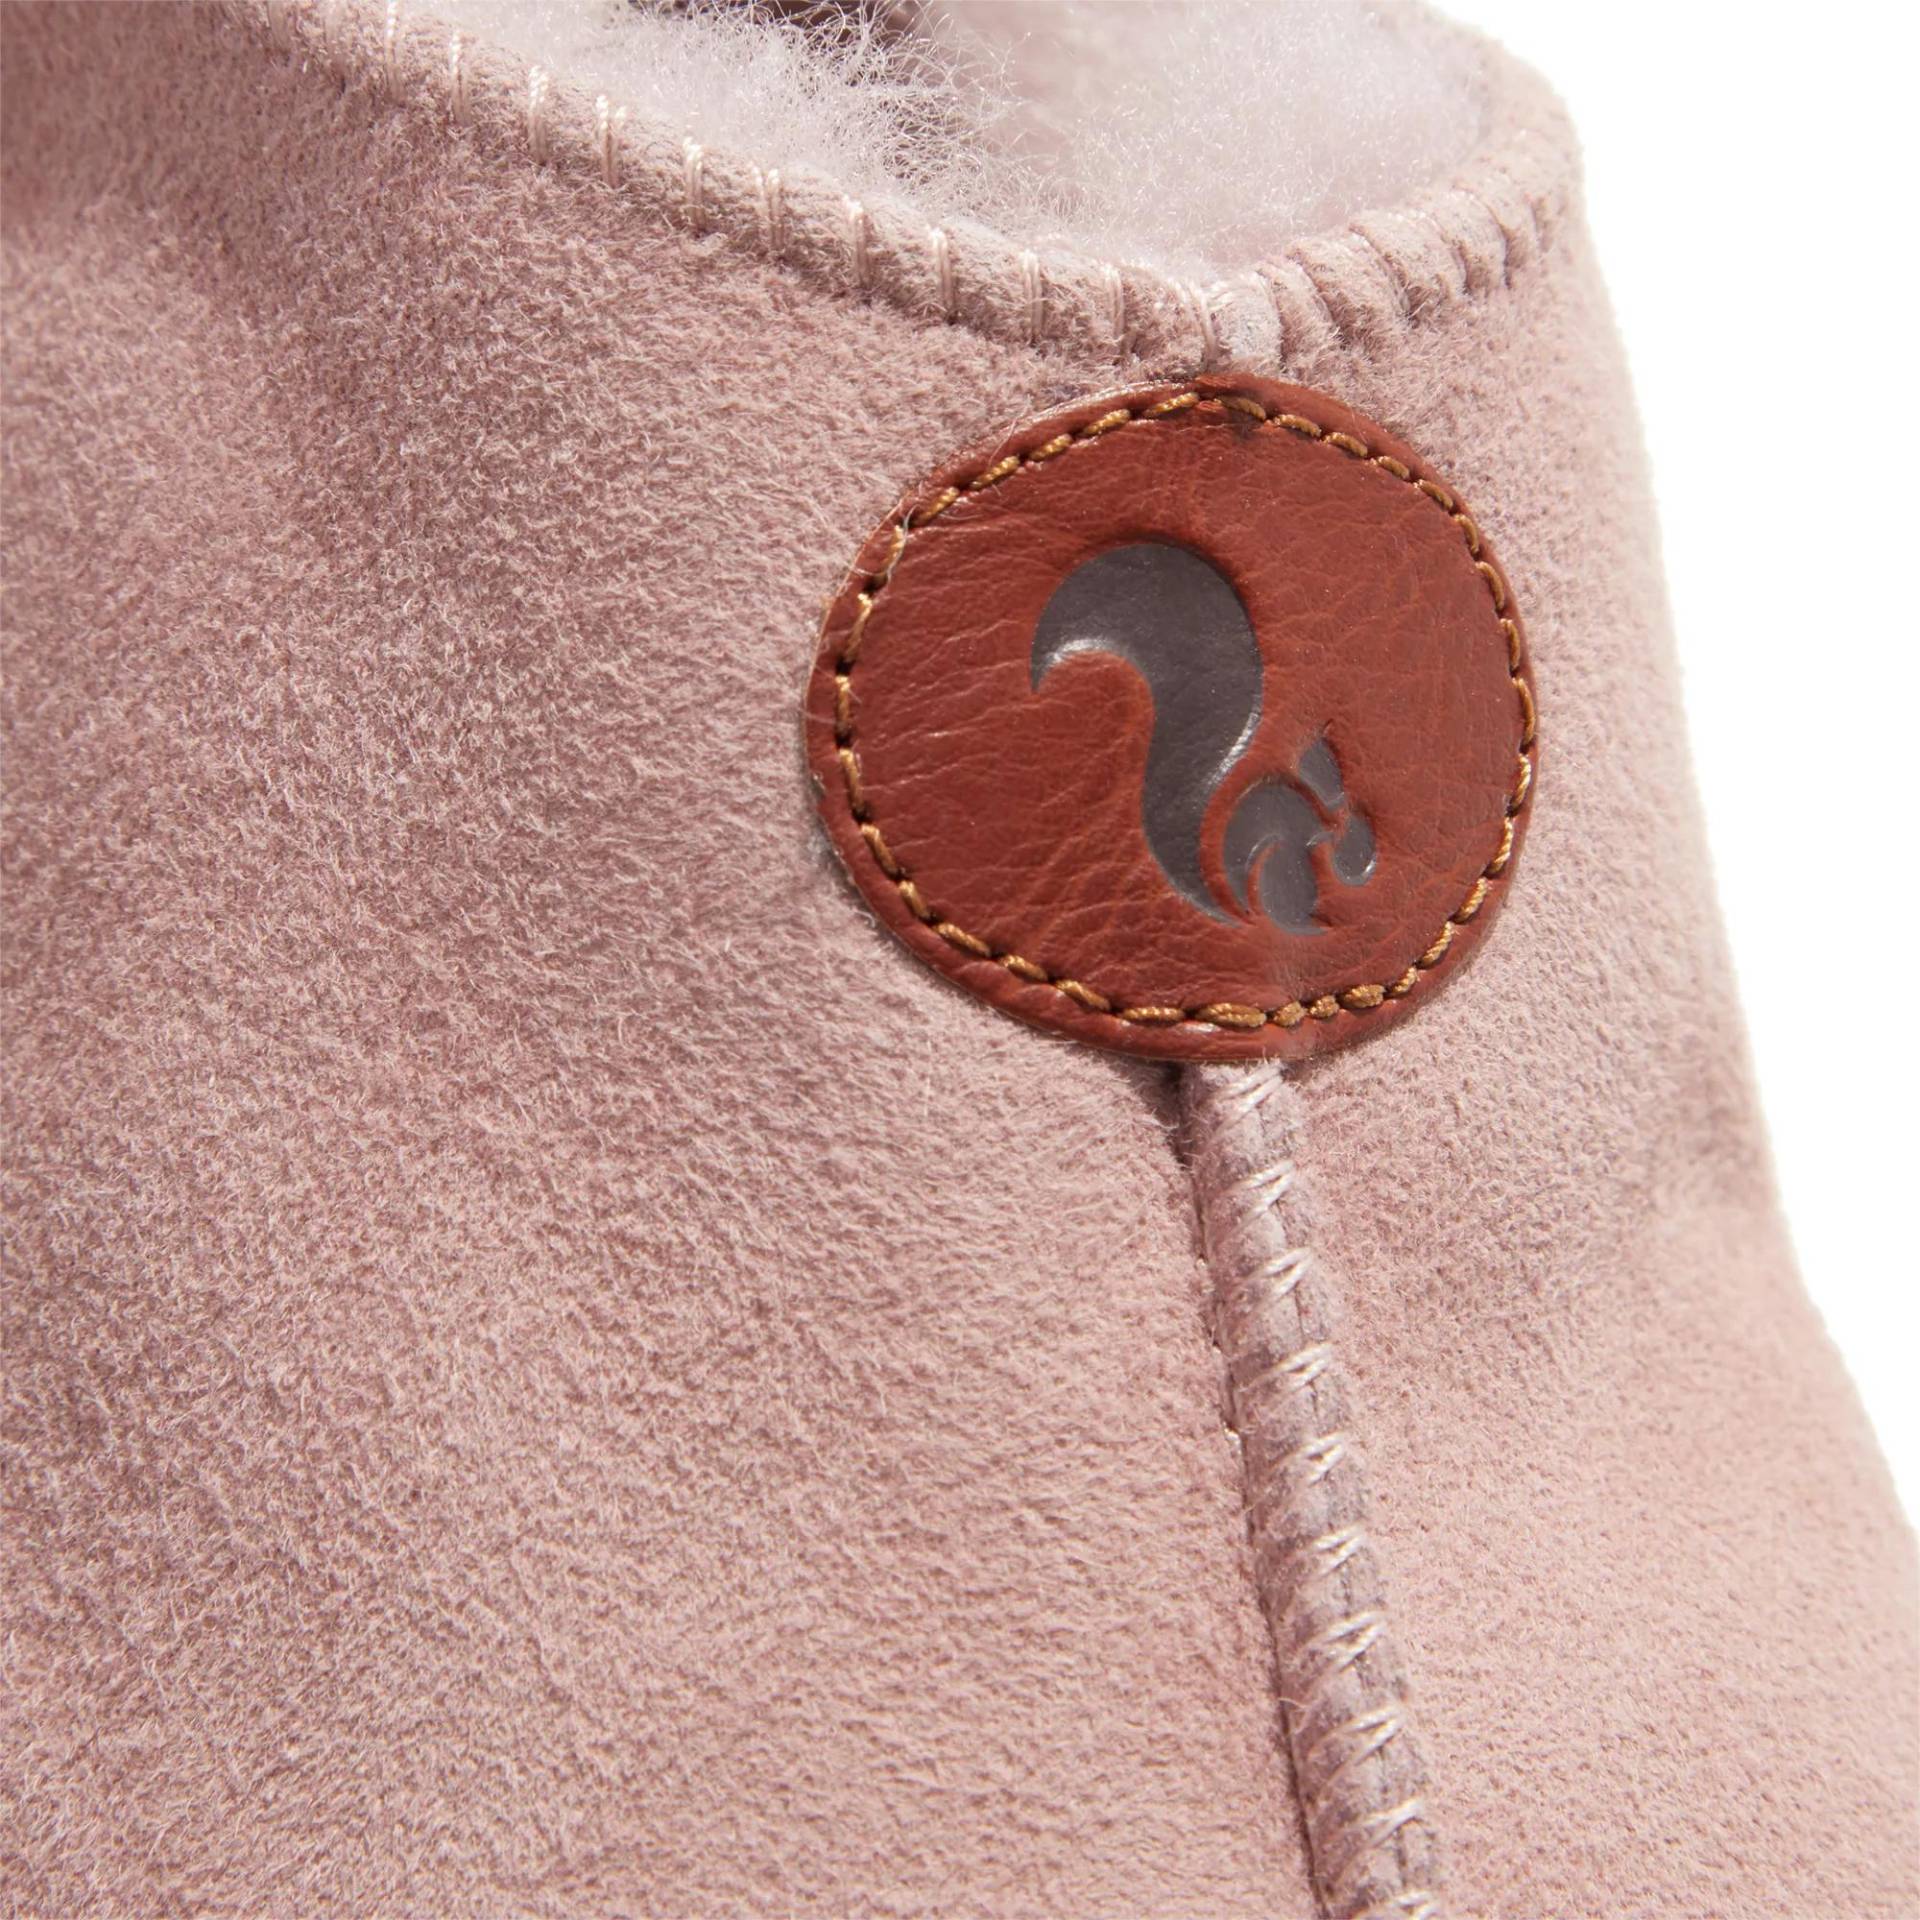 thies Sneakers - thies 1856 ® Sheep Slipper Boot new pink (W) - Gr. 42 (EU) - in Gold - für Damen von thies